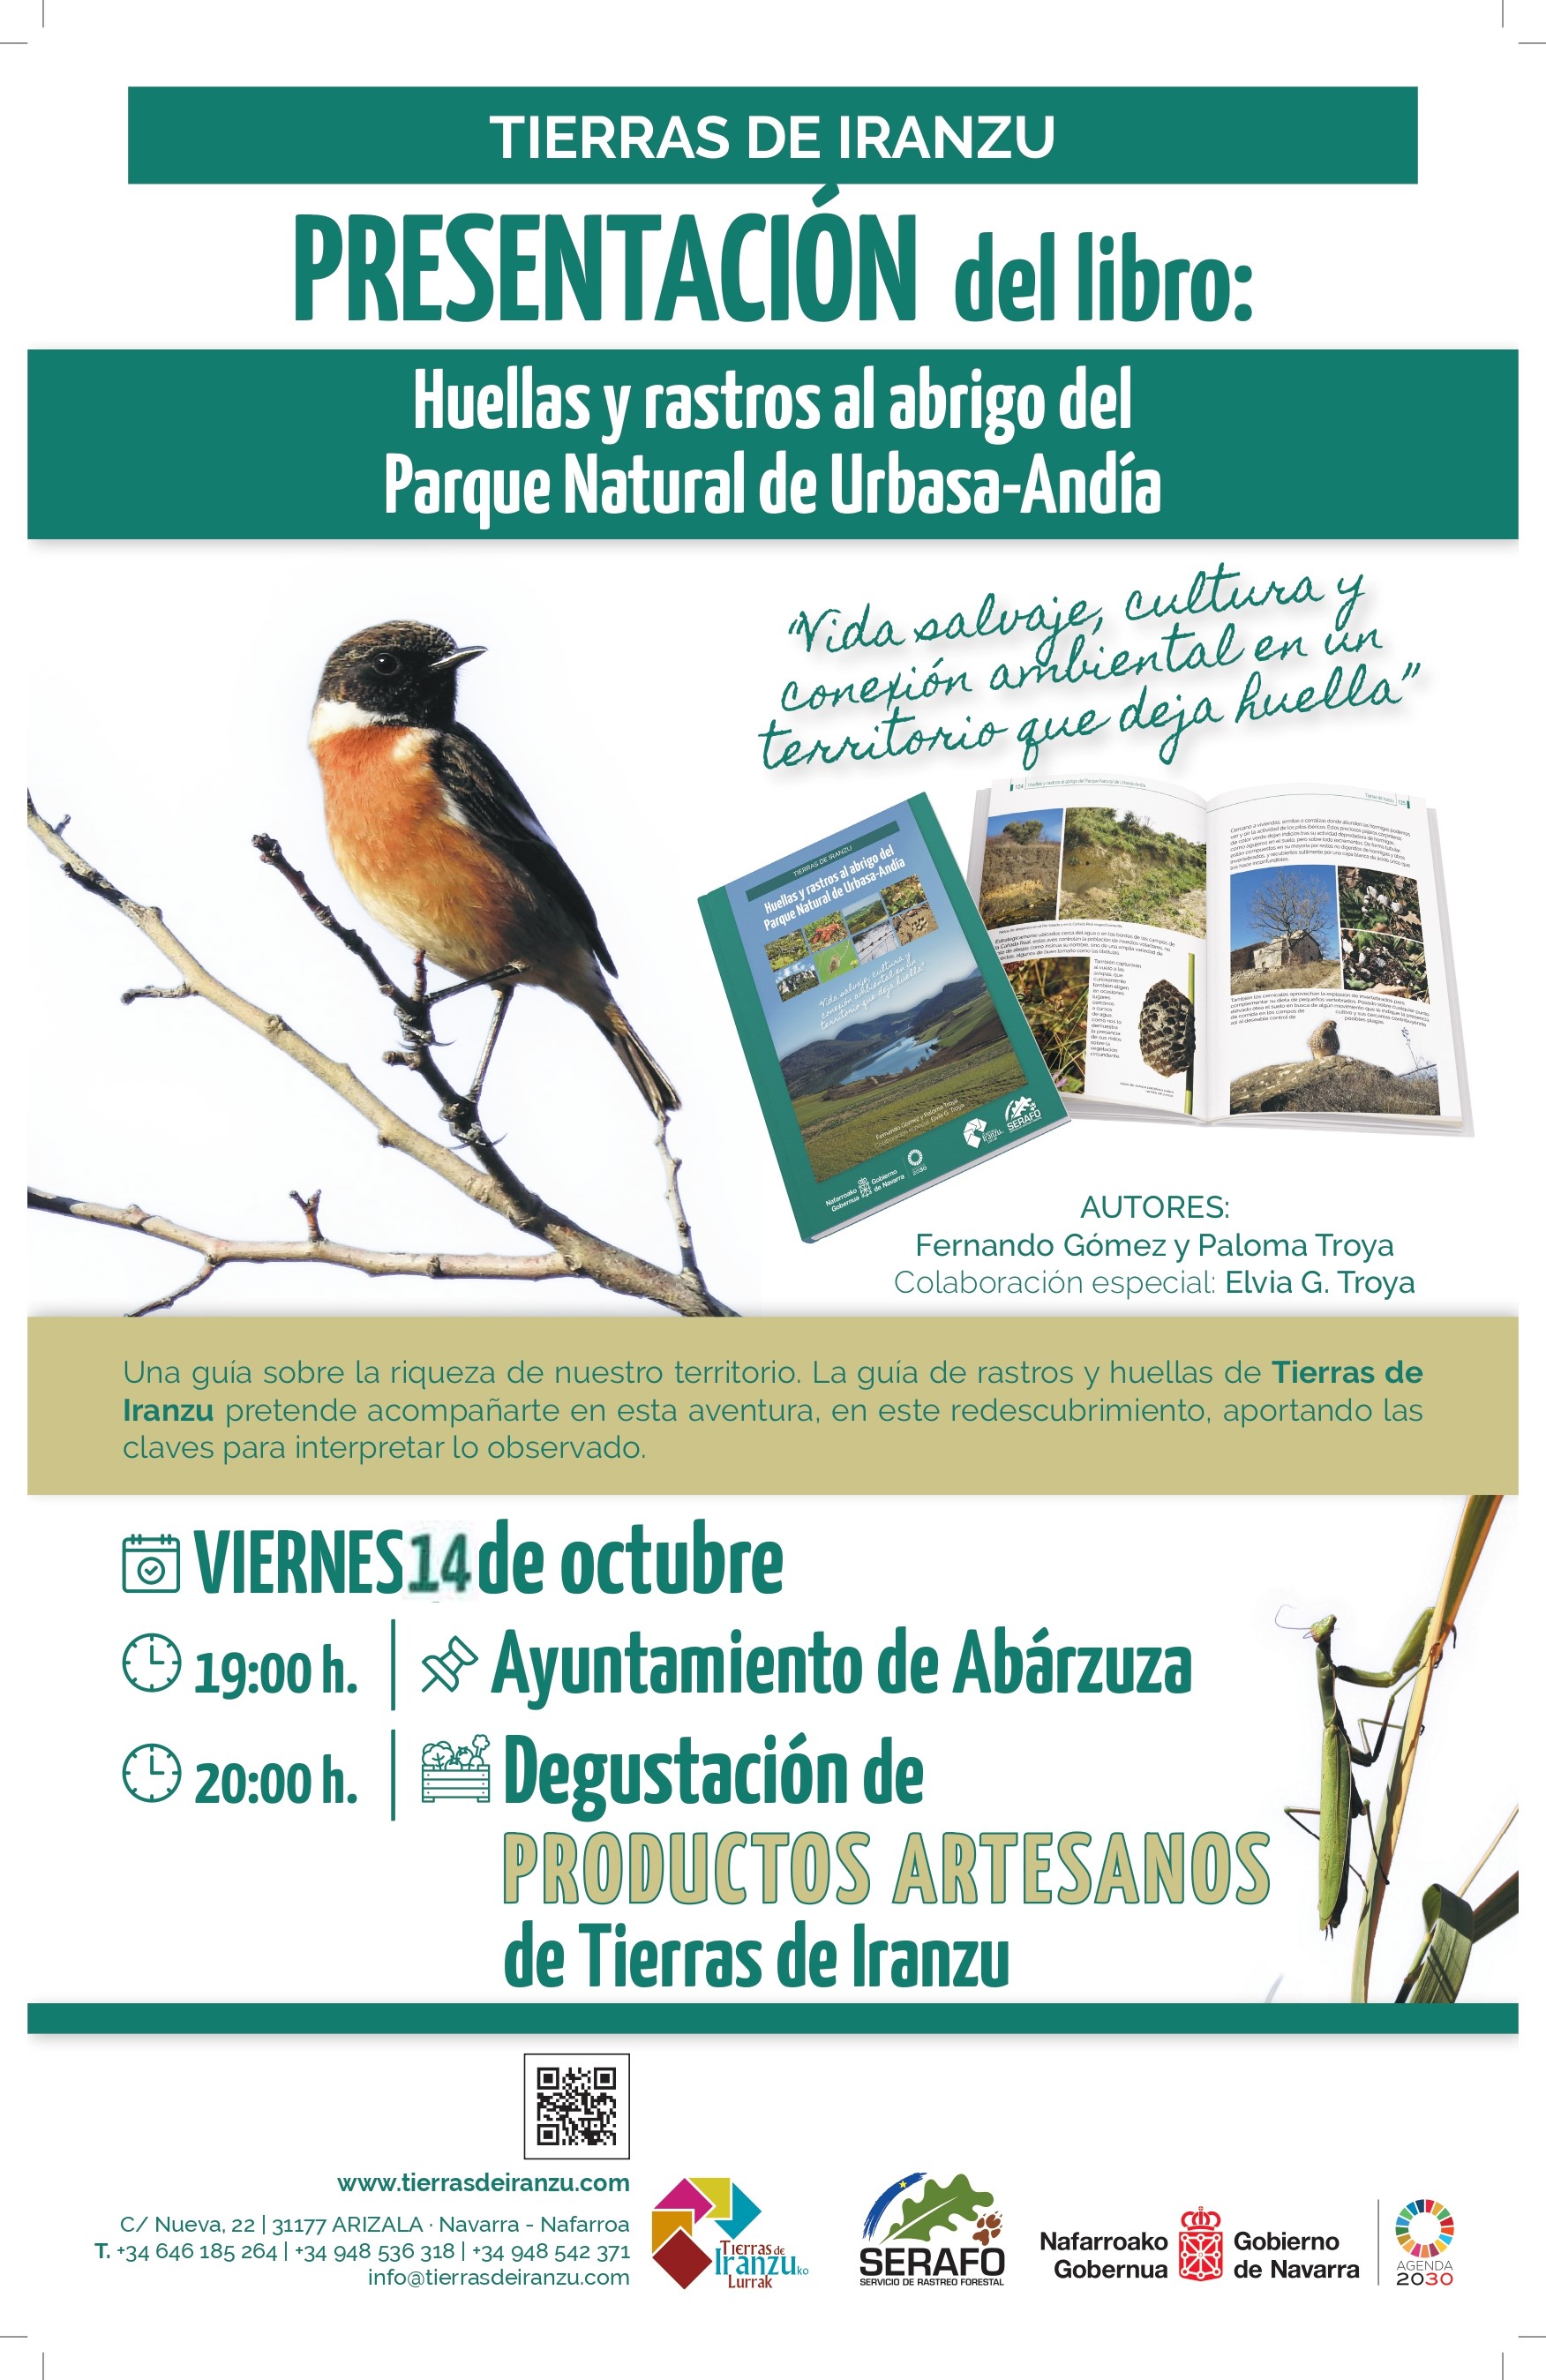 (Castellano) Libro: Huellas y rastros al abrigo del Parque Natural de Urbasa-Andía